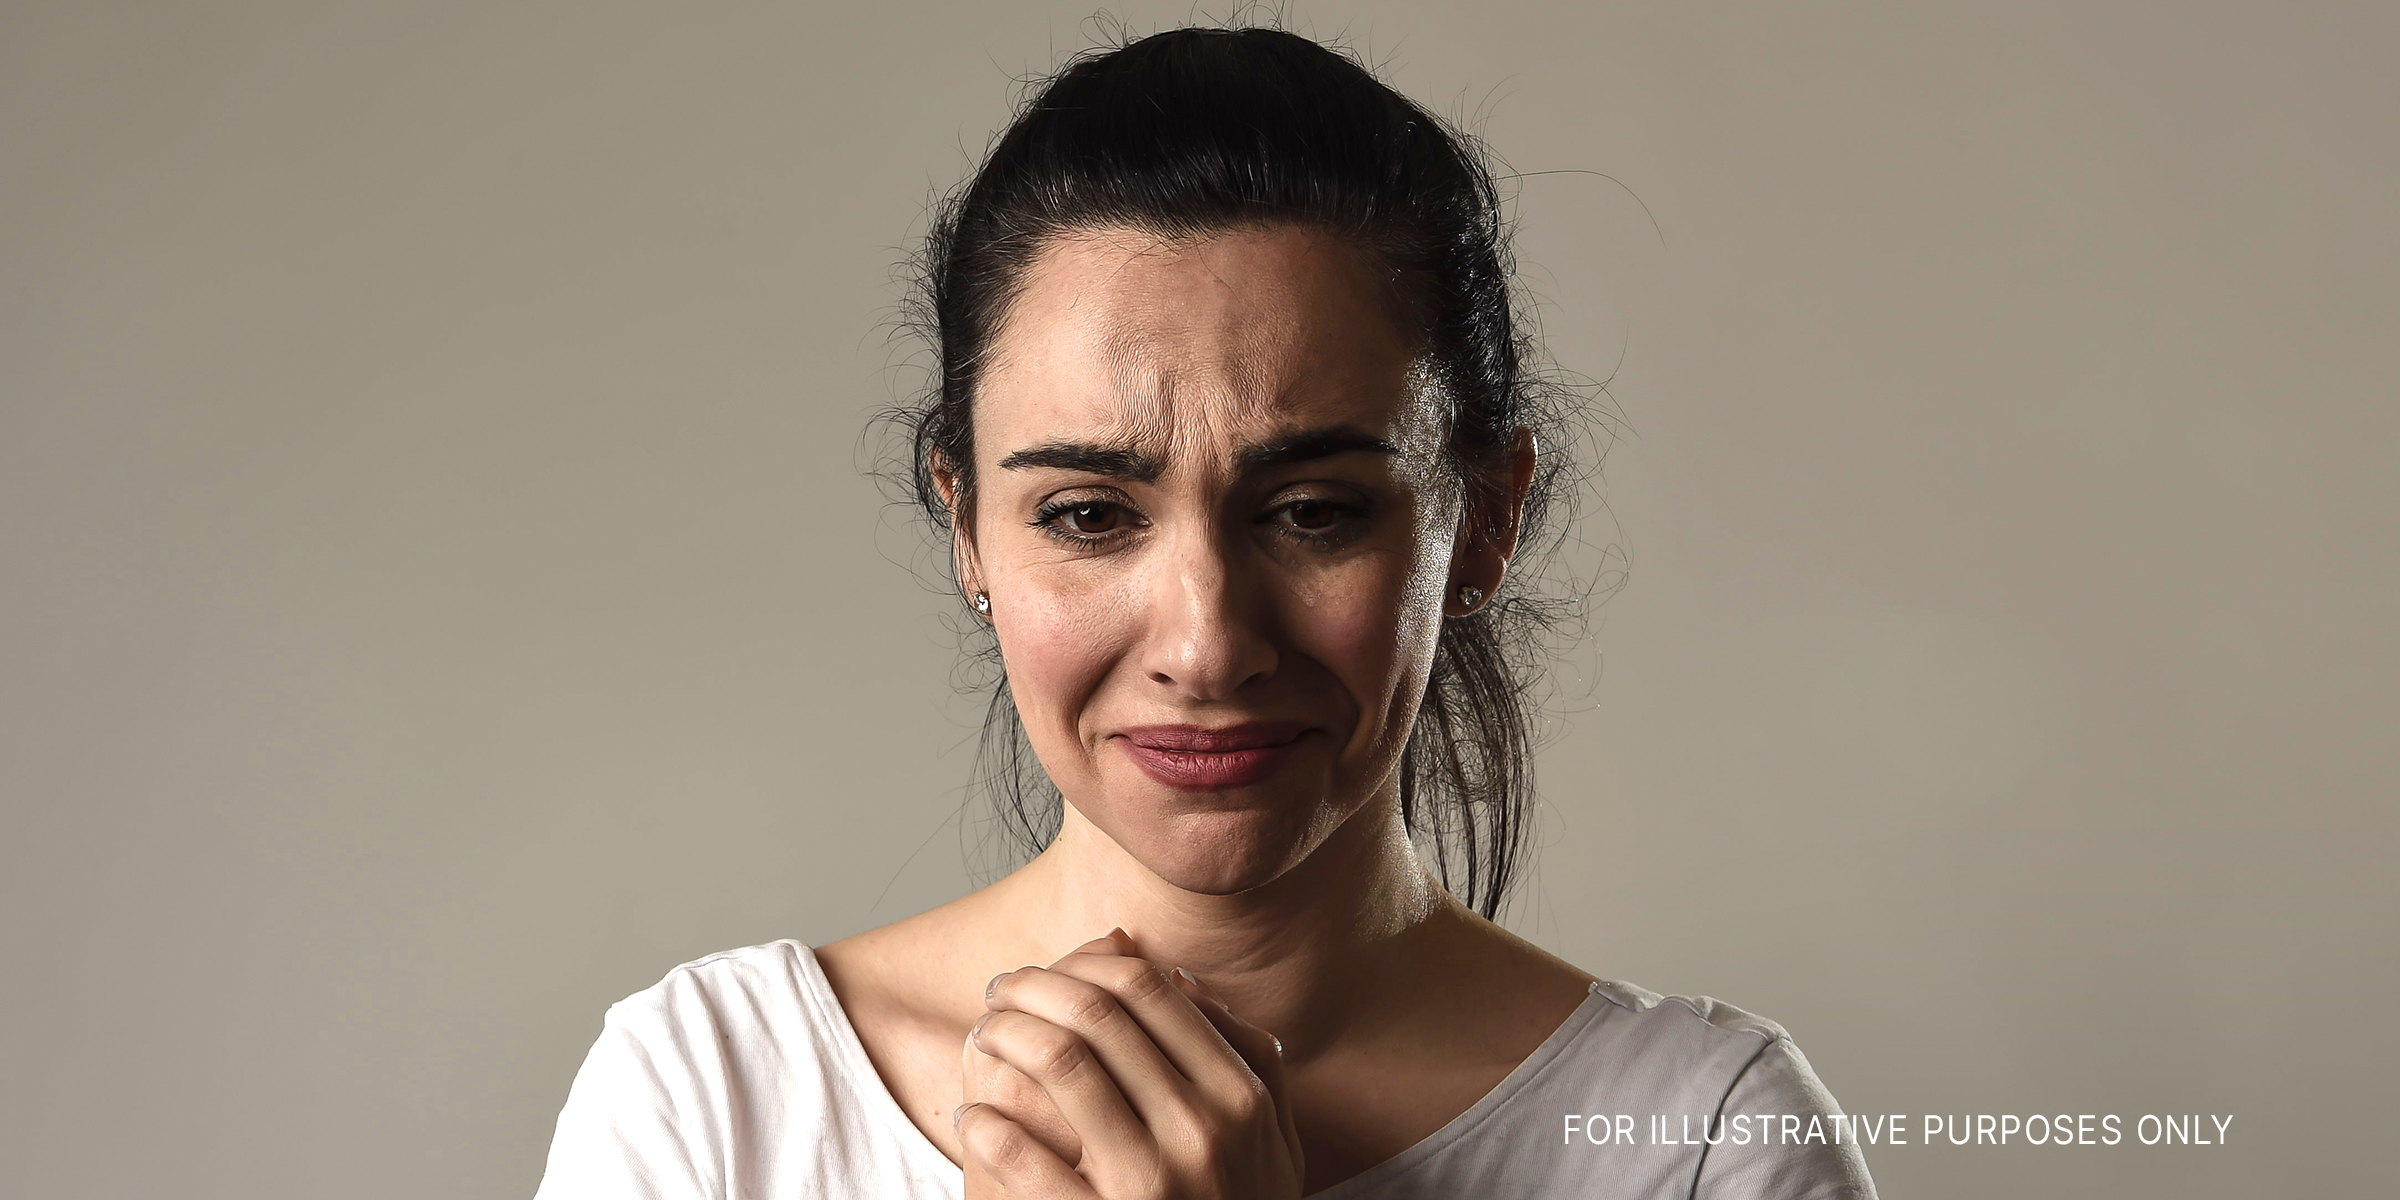 Woman in tears | Source: Shutterstock